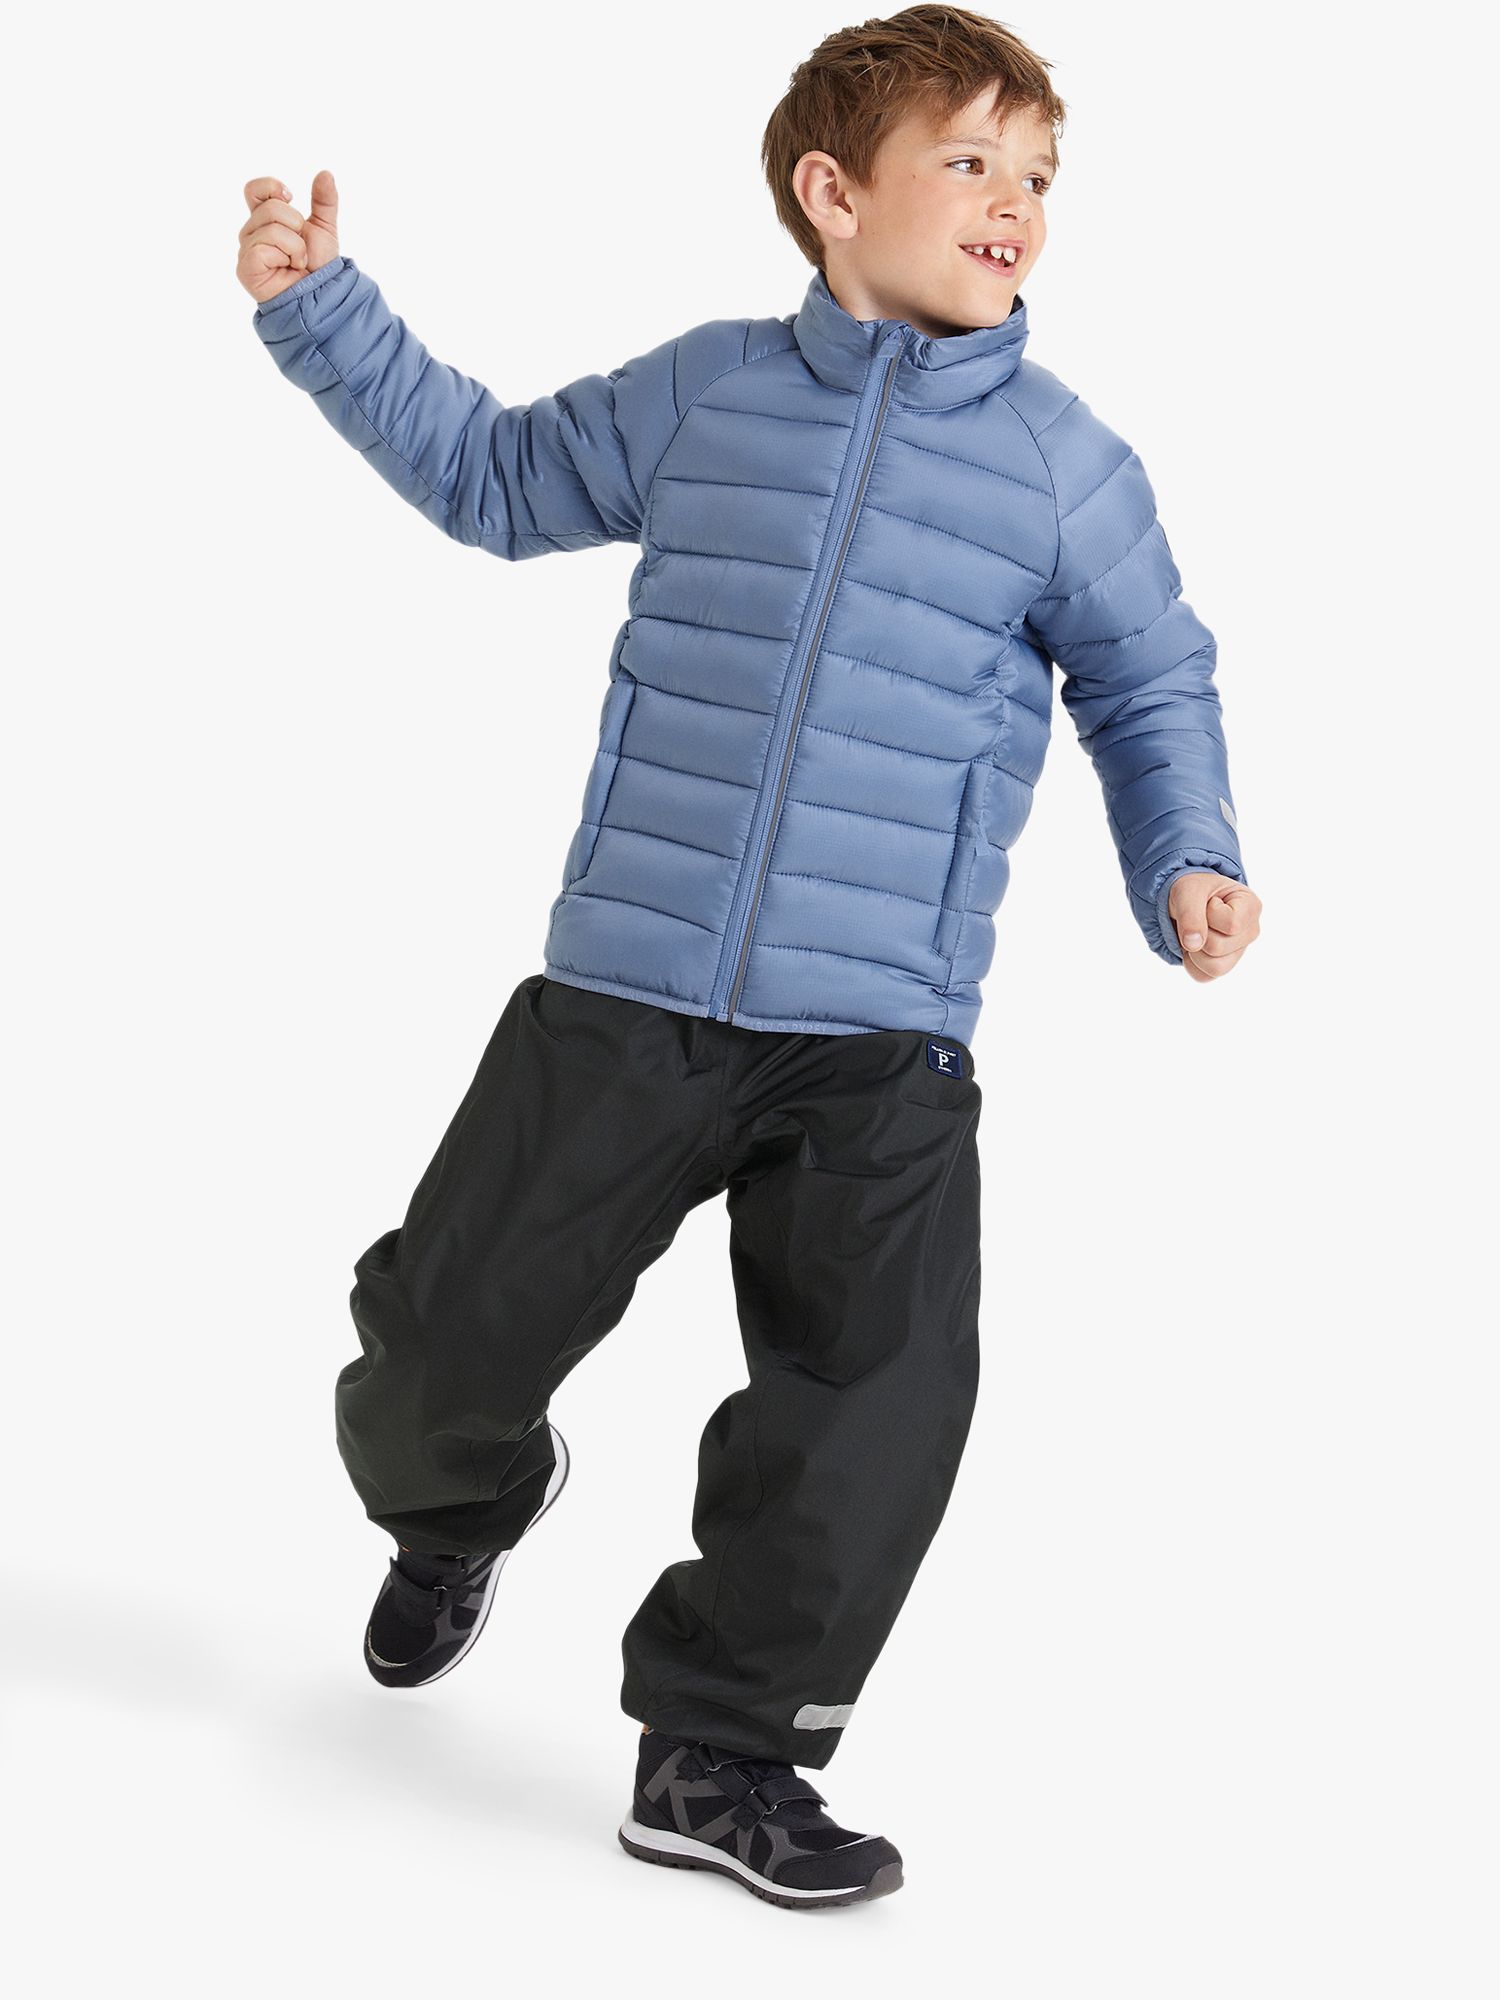 Buy Polarn O. Pyret Kids' Padded Jacket, Blue Online at johnlewis.com